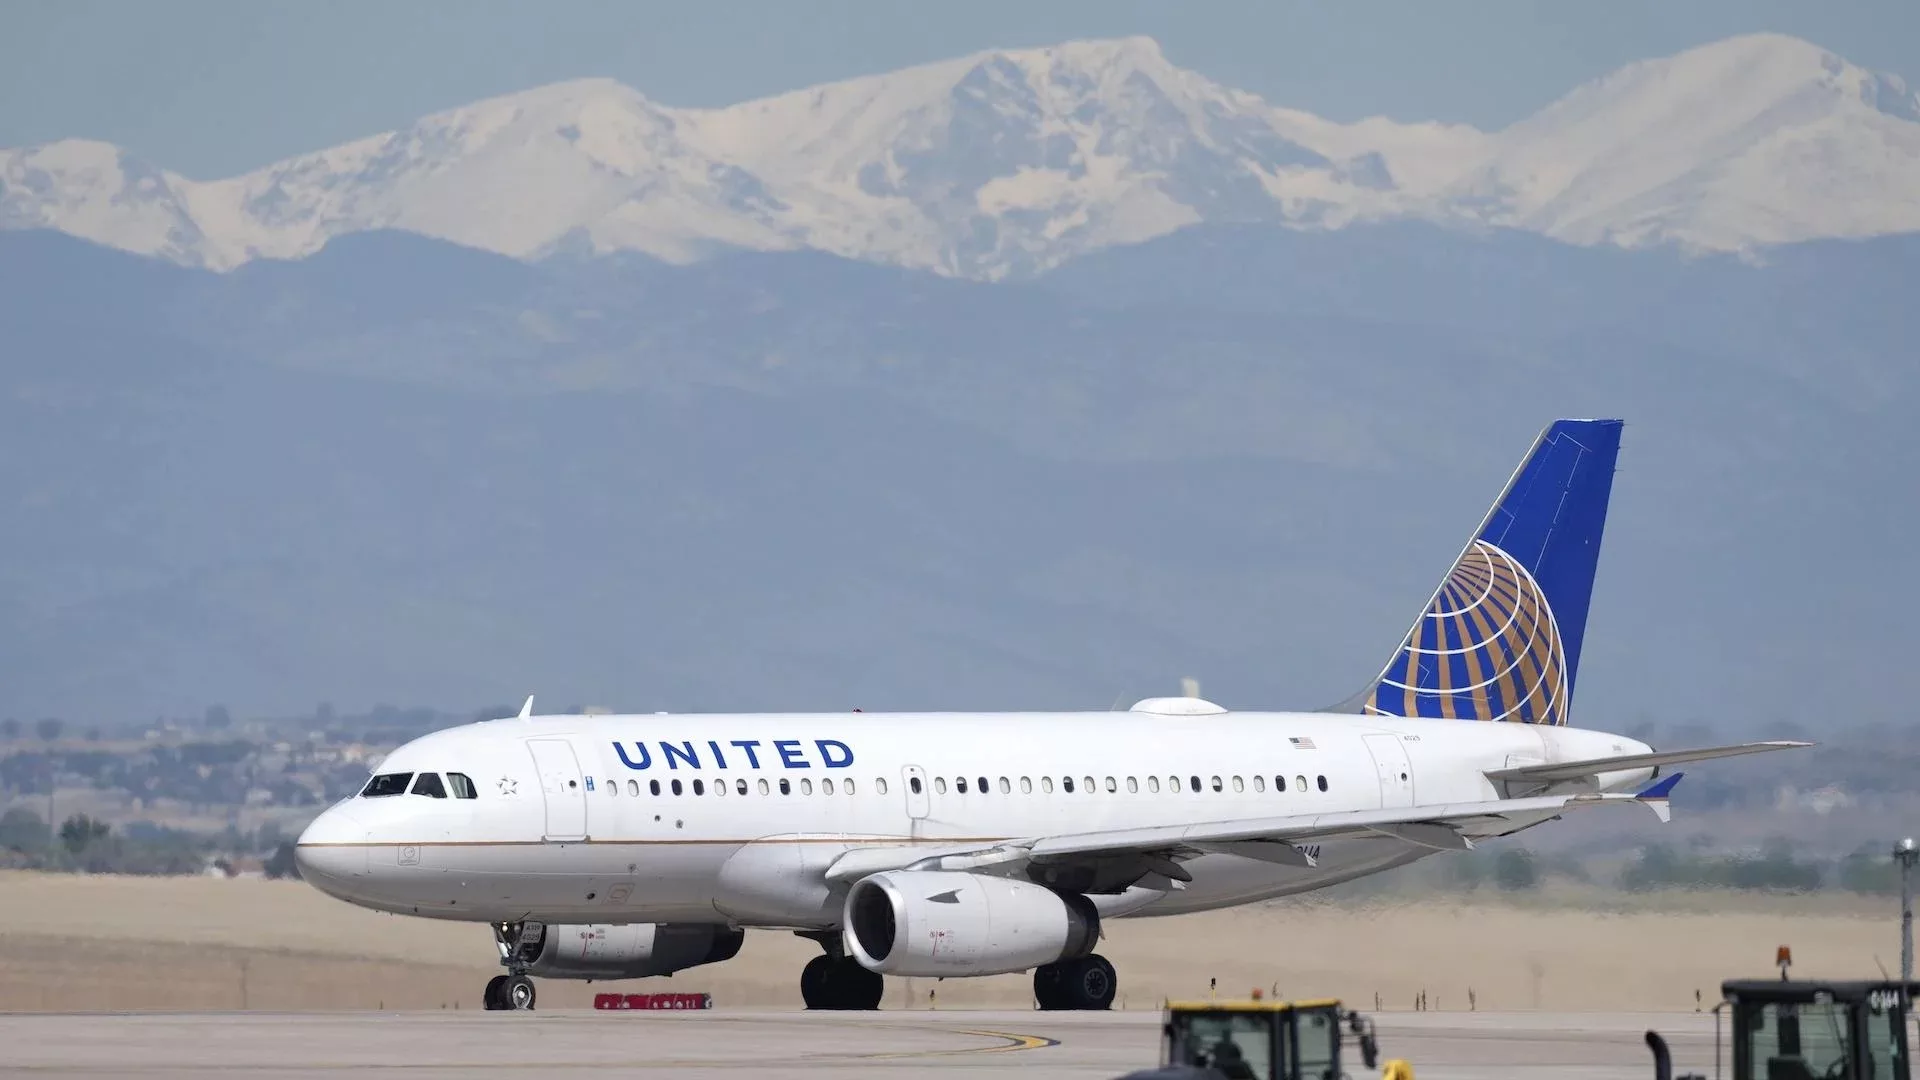 United Airlines estimates are positive despite increased fare